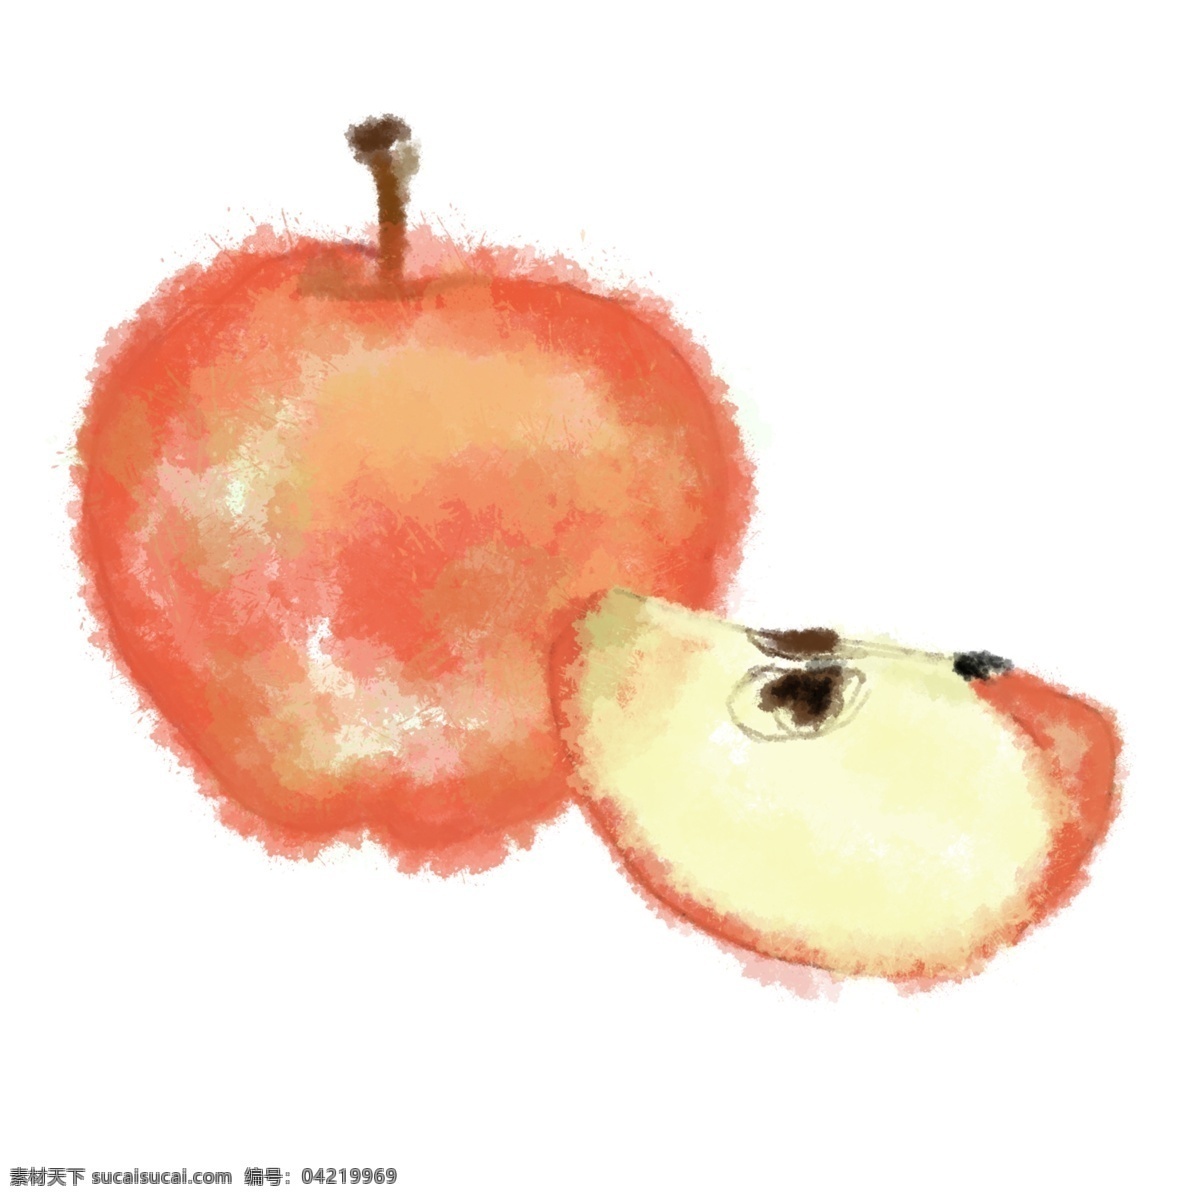 卡通 手绘 红色 苹果 免 抠 图 一半苹果 一个大苹果 水果 新鲜的 红苹果 平安夜 水墨苹果